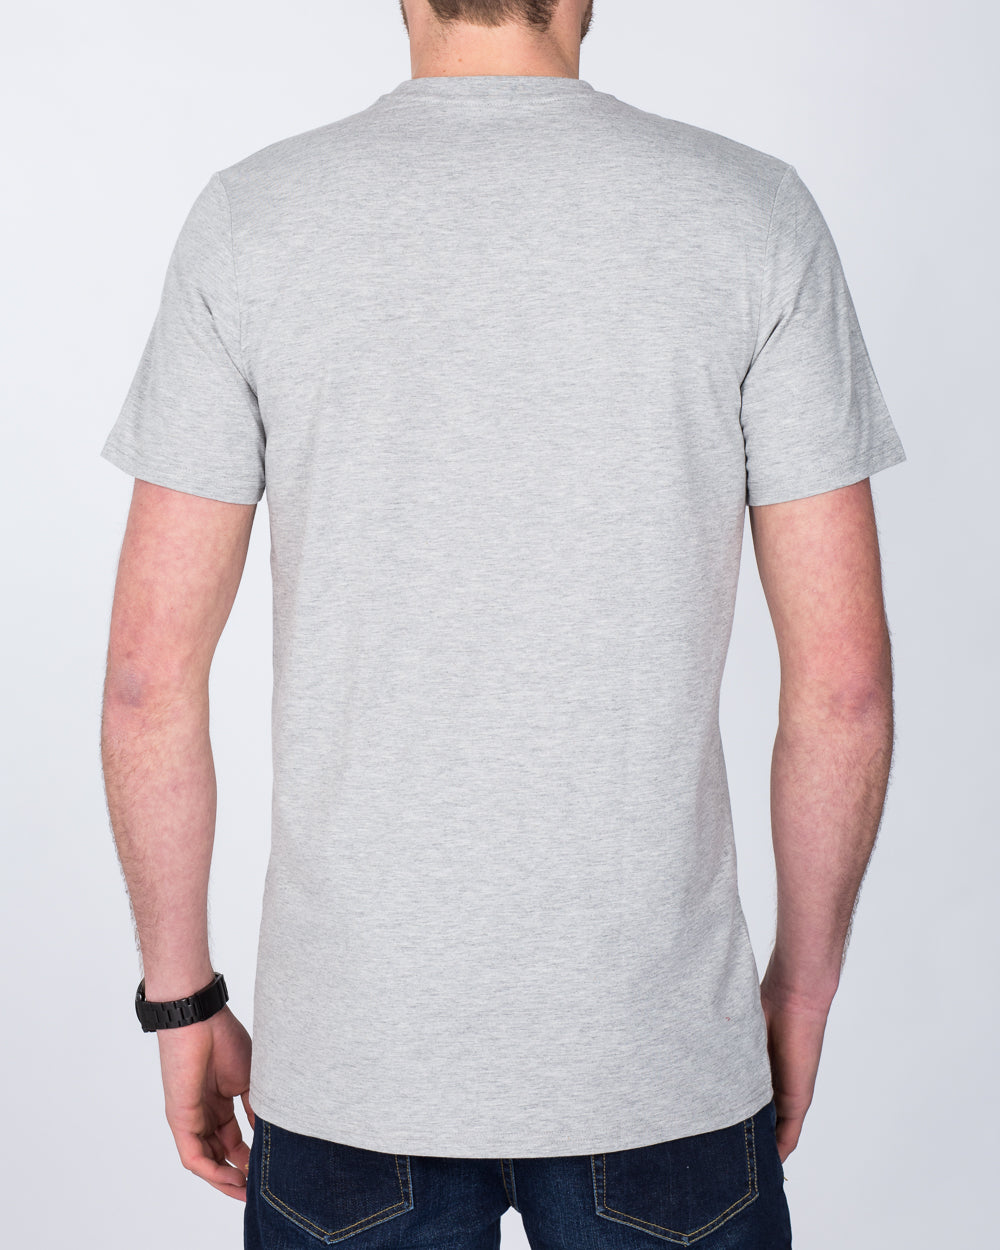 Girav Sydney Extra Tall T-Shirt (grey)